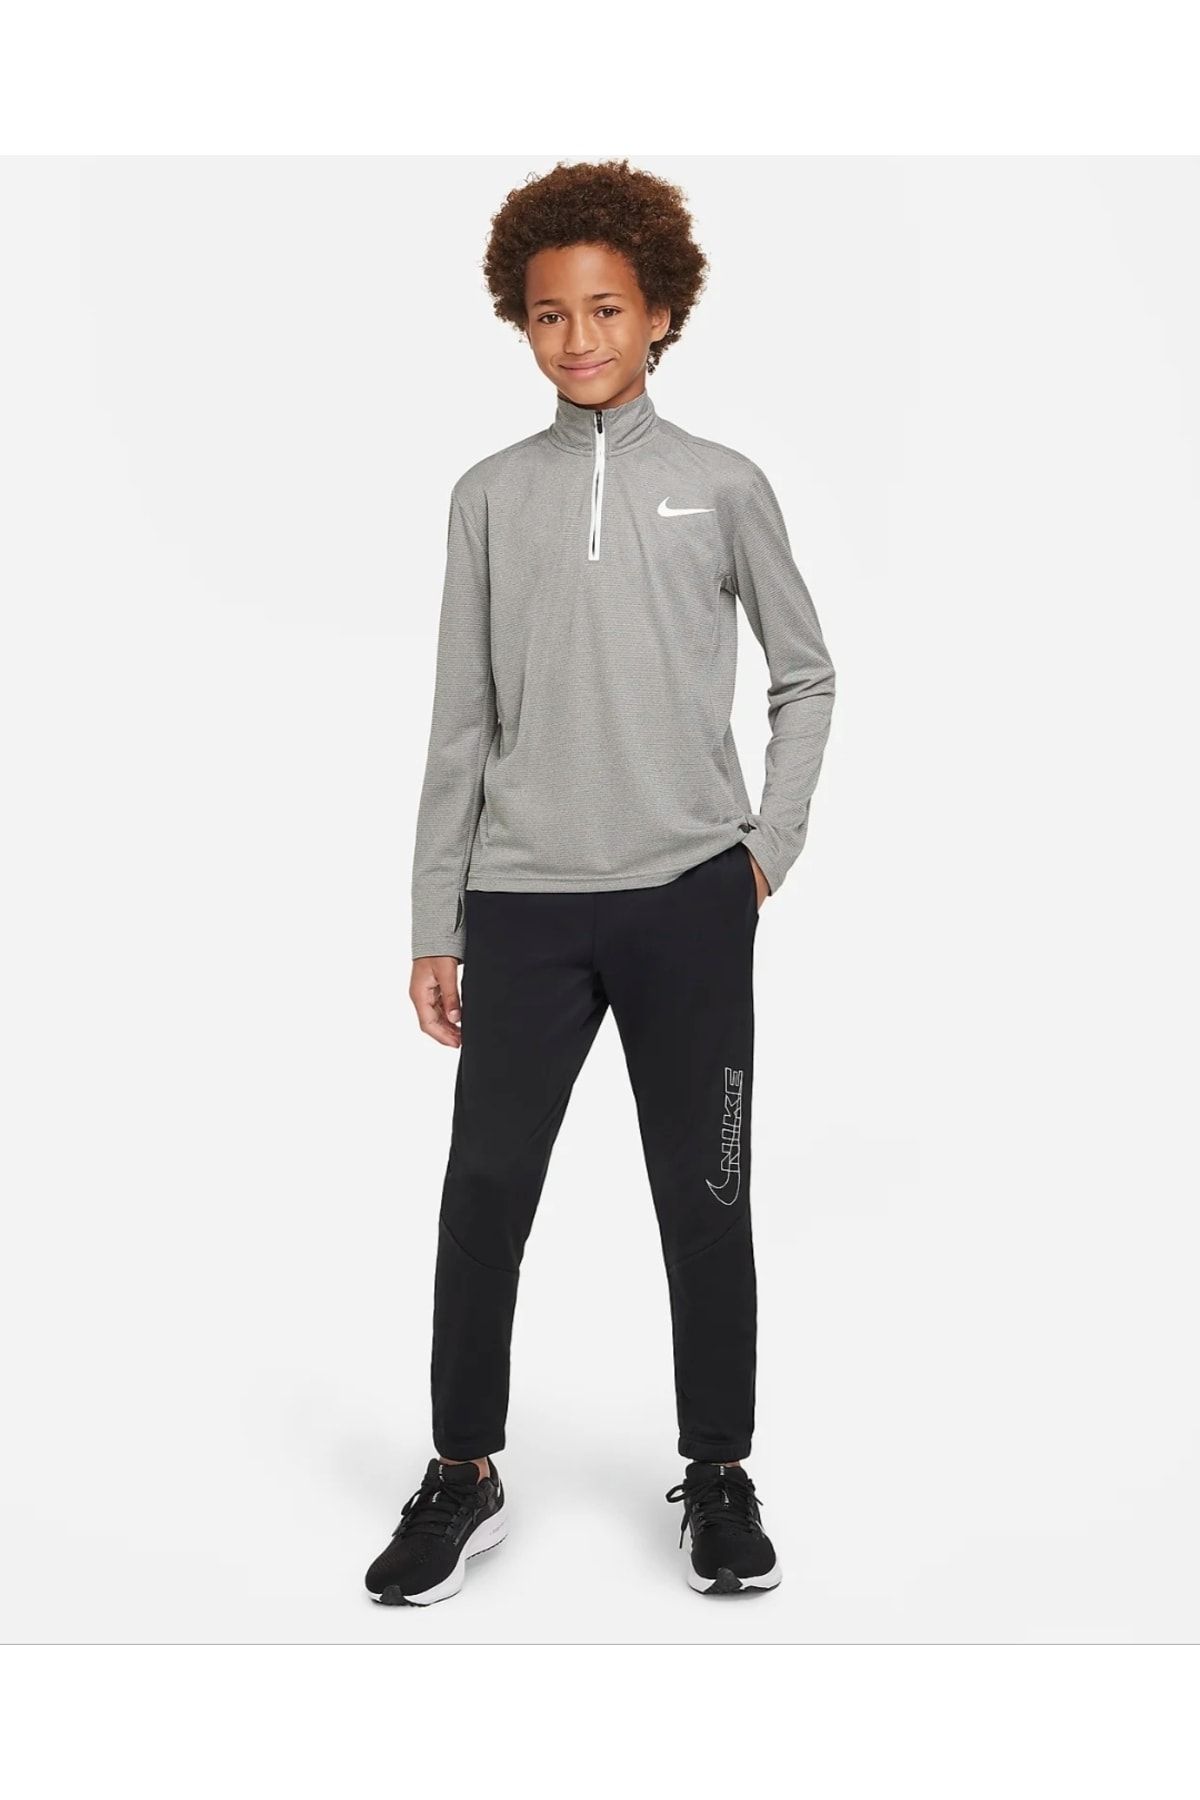 Nike Therma-fıt Bileğe Doğru Daralan Grafikli Genç Çocuk (erkek) Antrenman Eşofman Altı